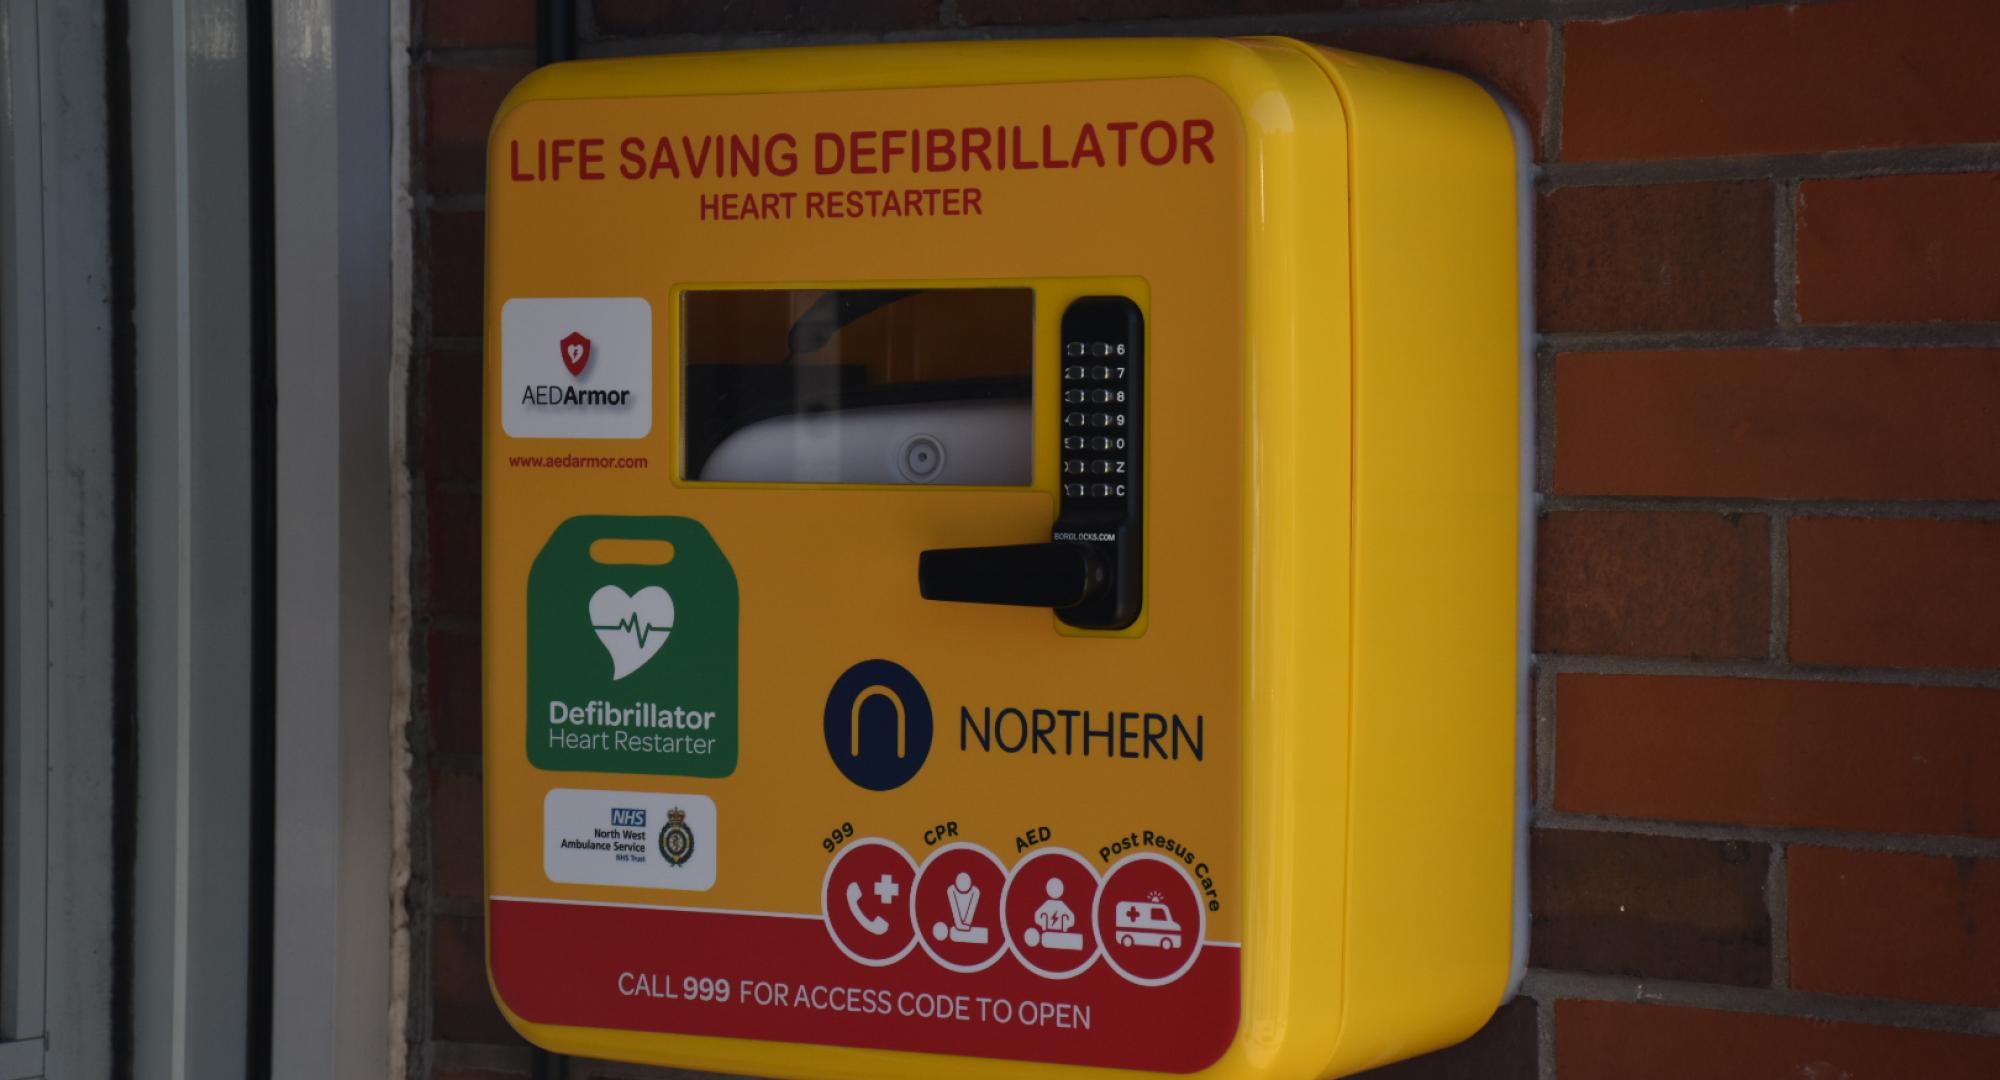 Northern defibrillator, via Northern 